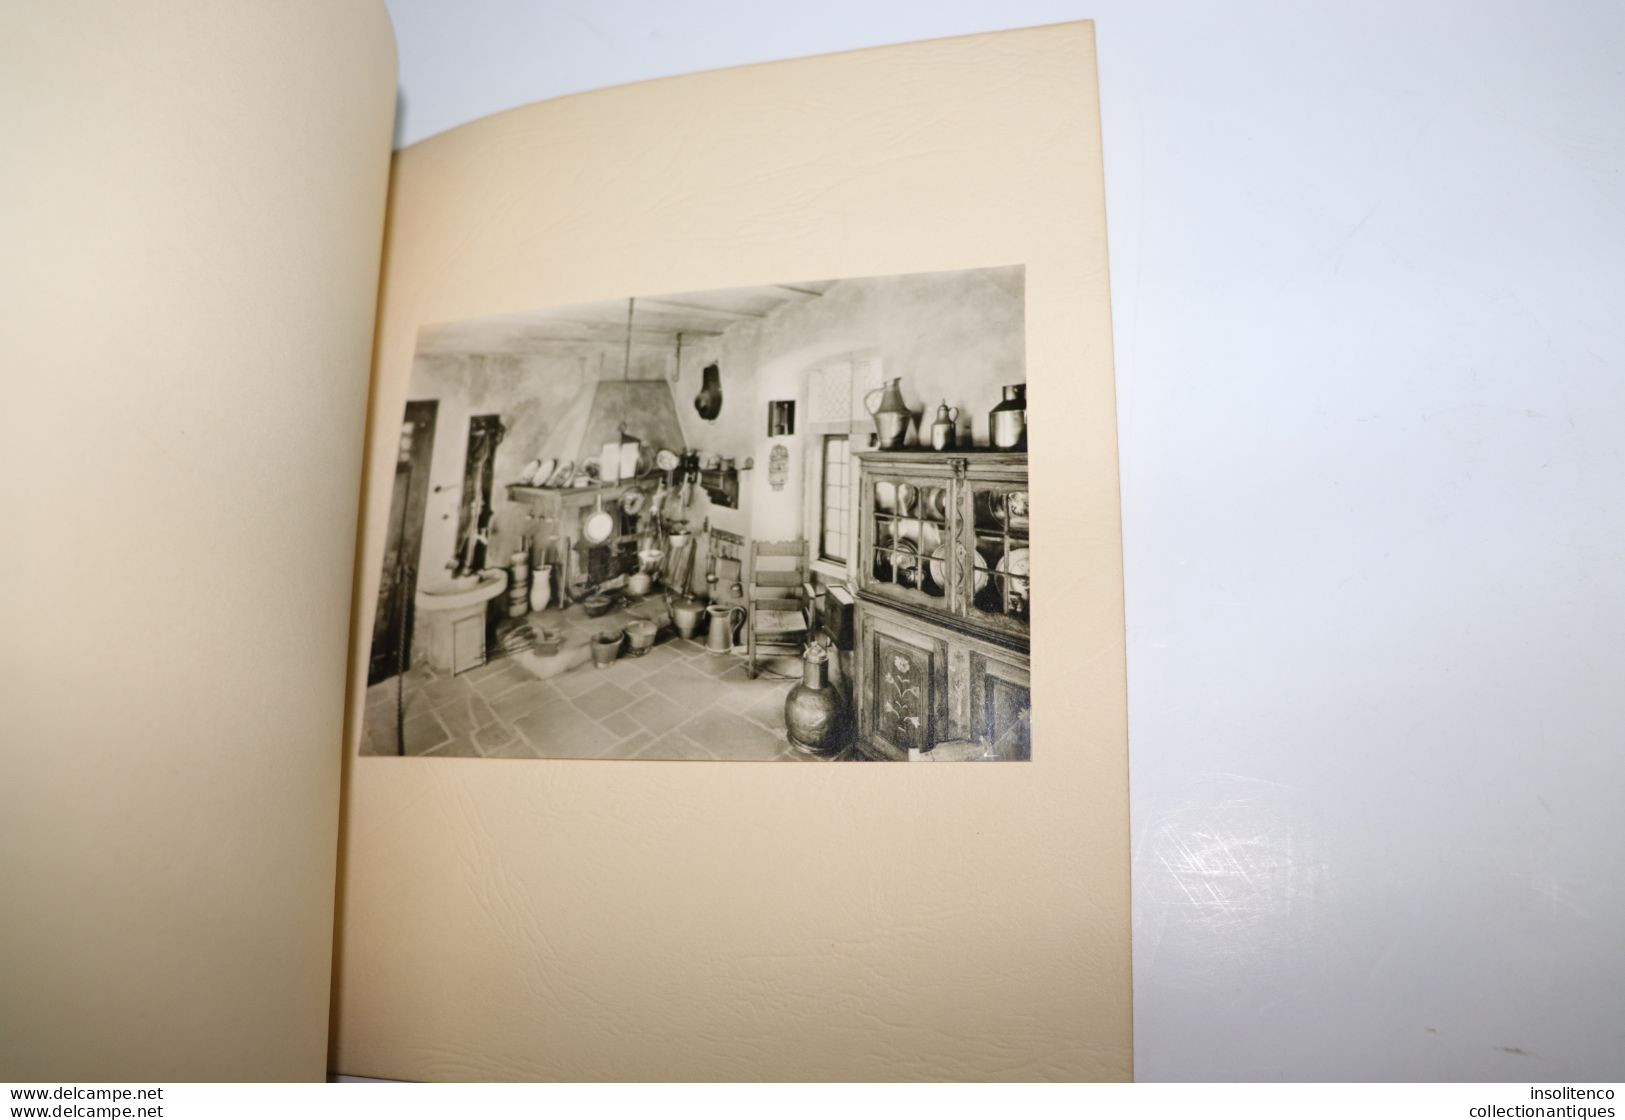 Livre Schloss Burg an der Wupper - Hans Neubarth Verlag - 1956 - album de cartes postales photographiques du château